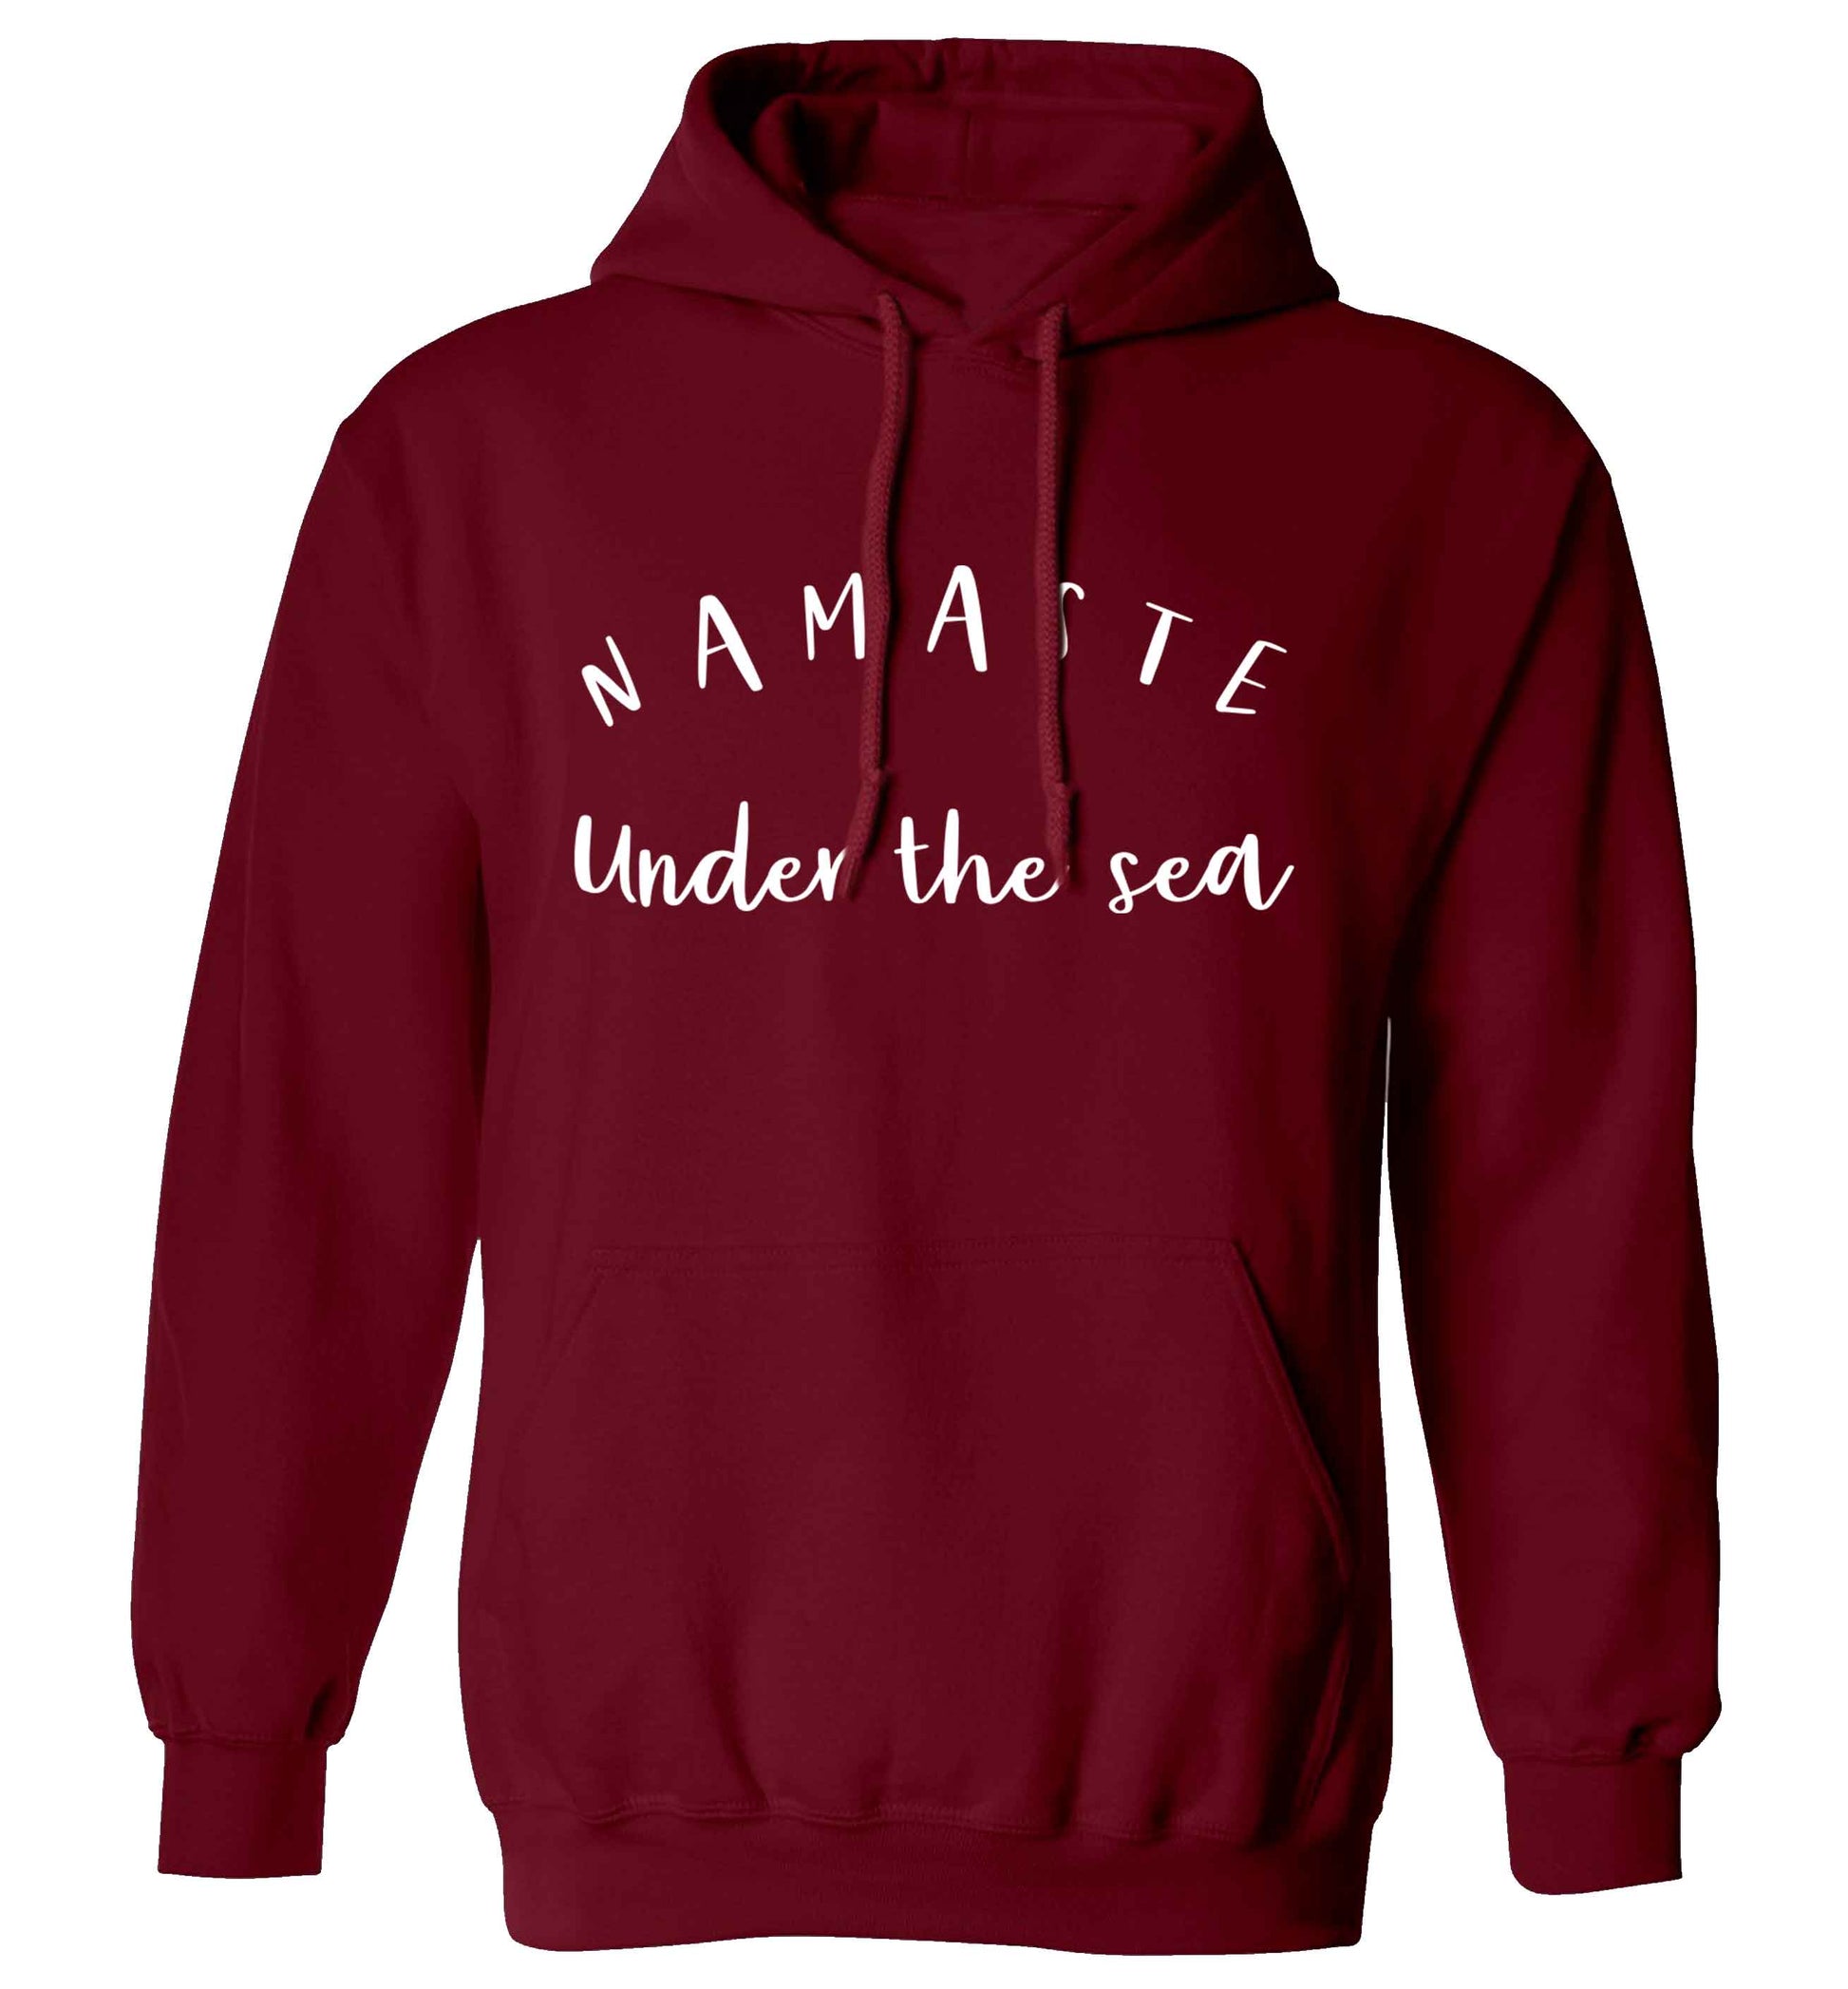 Namaste under the water adults unisex maroon hoodie 2XL